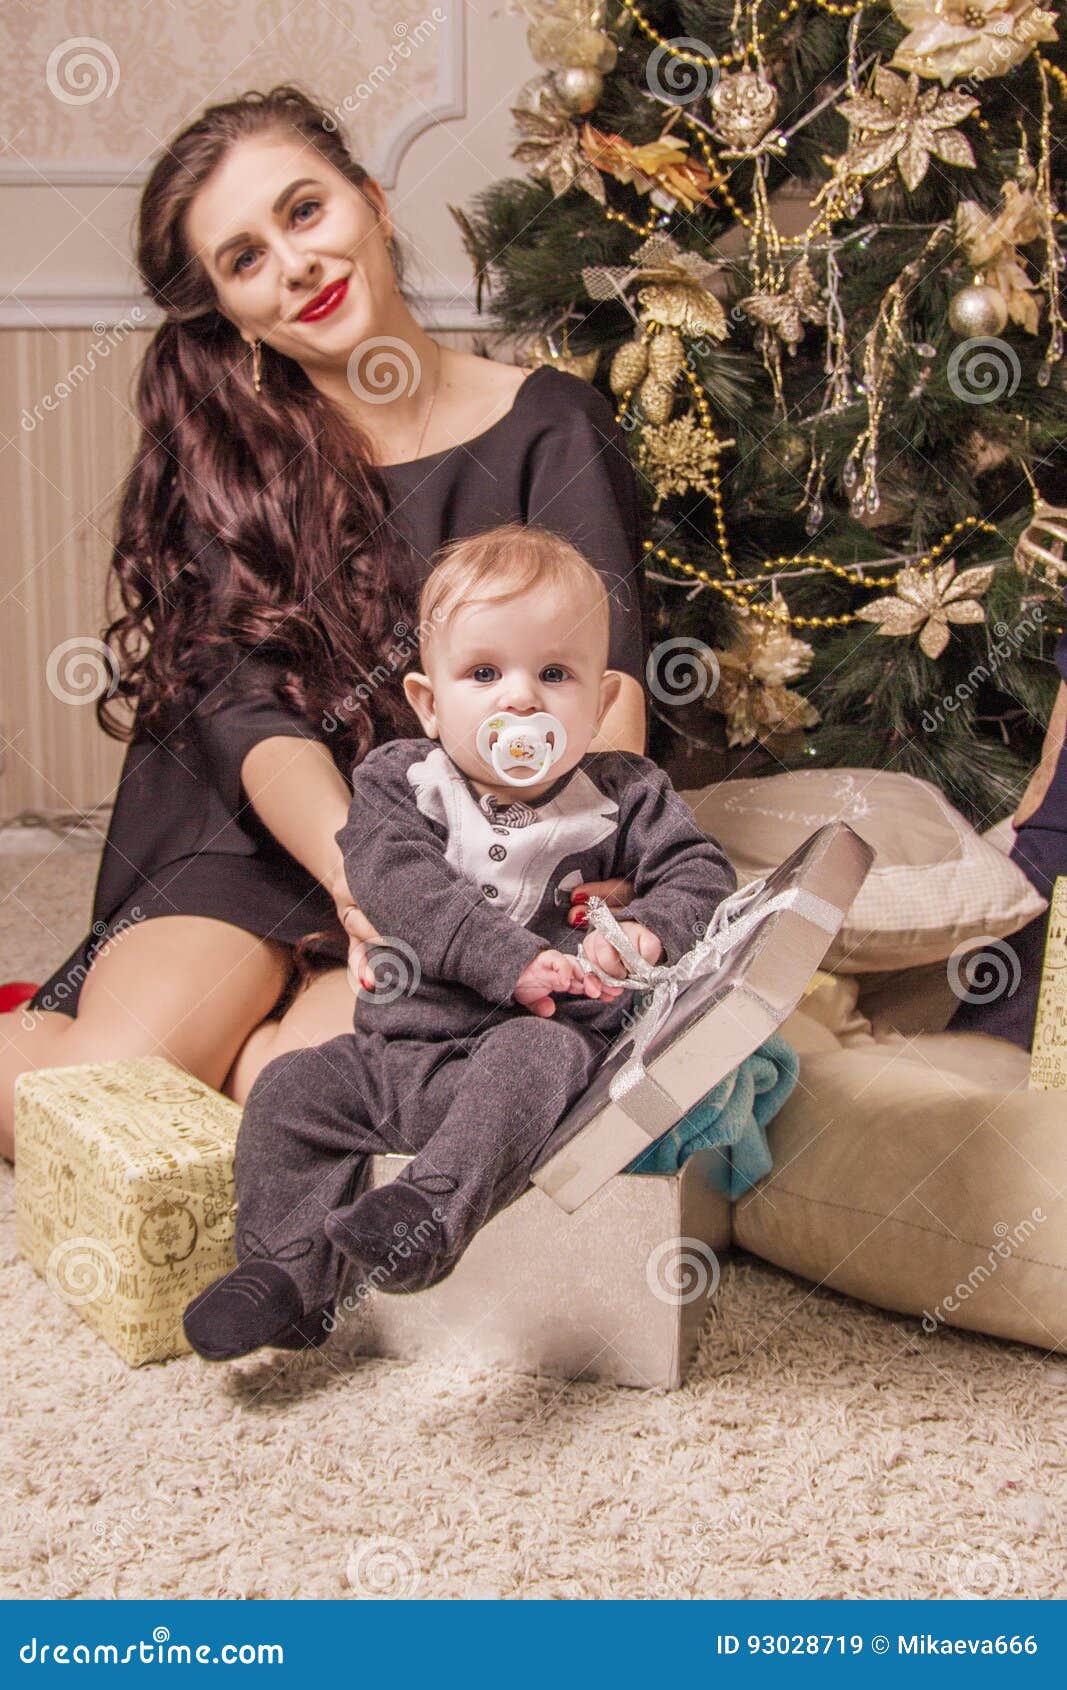 Mamman sitter under trädet med ett småbarn i en gåvaask. Den lyckliga mamman sitter under en julgran med ett småbarn i en gåvaask